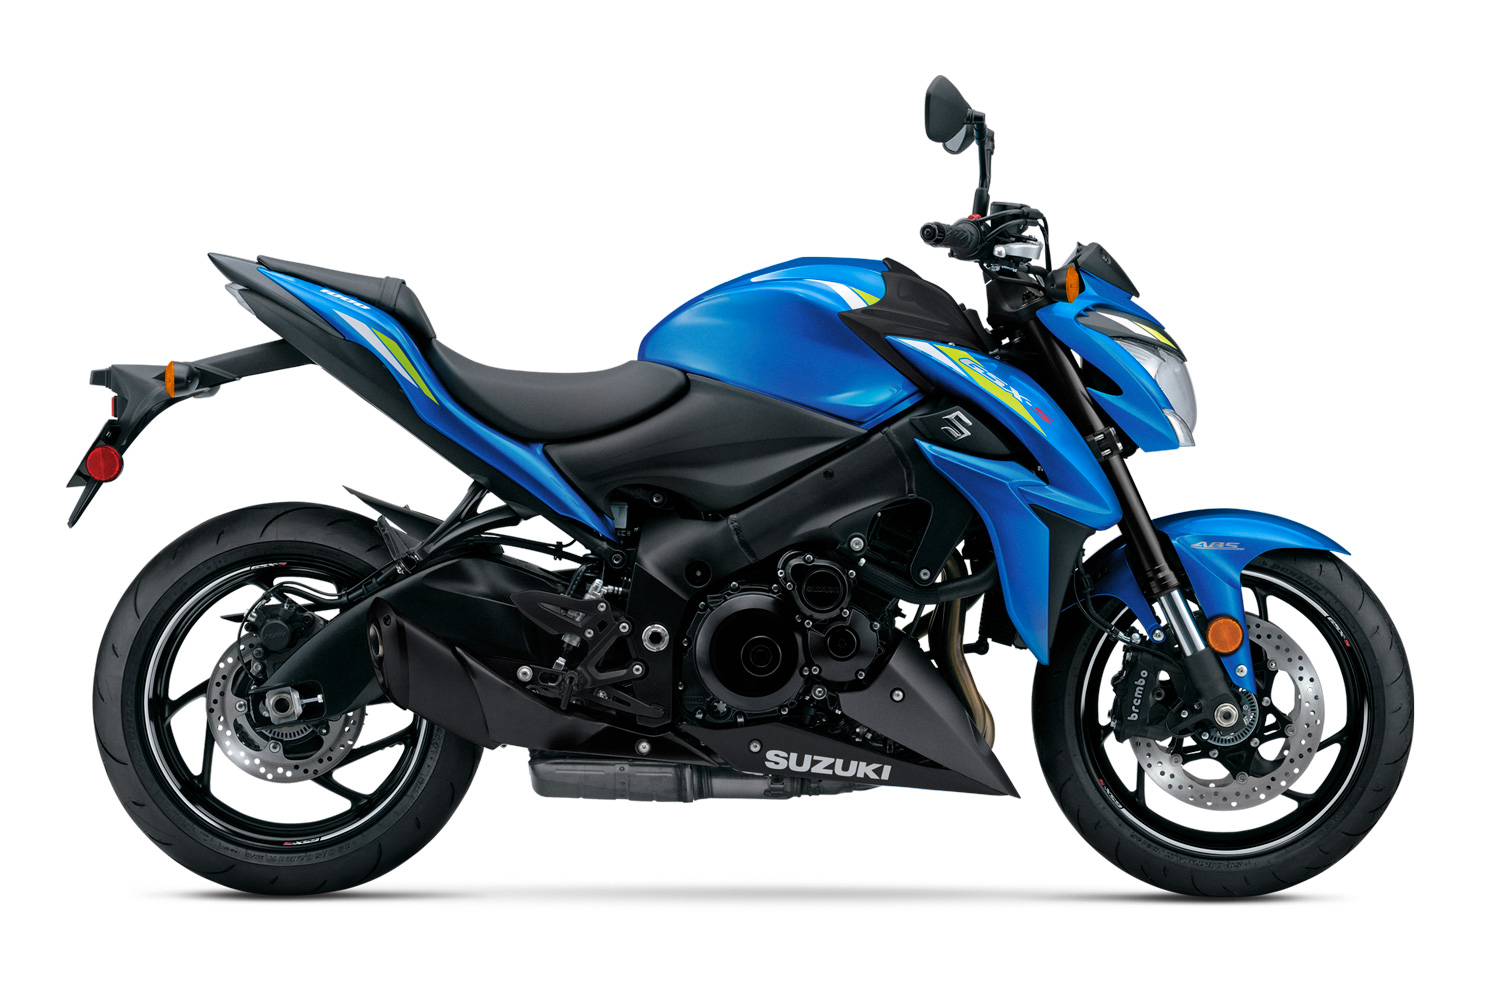 2020 Suzuki GSX-S1000 Buyer's Guide: Specs, Photos, Price | Cycle World